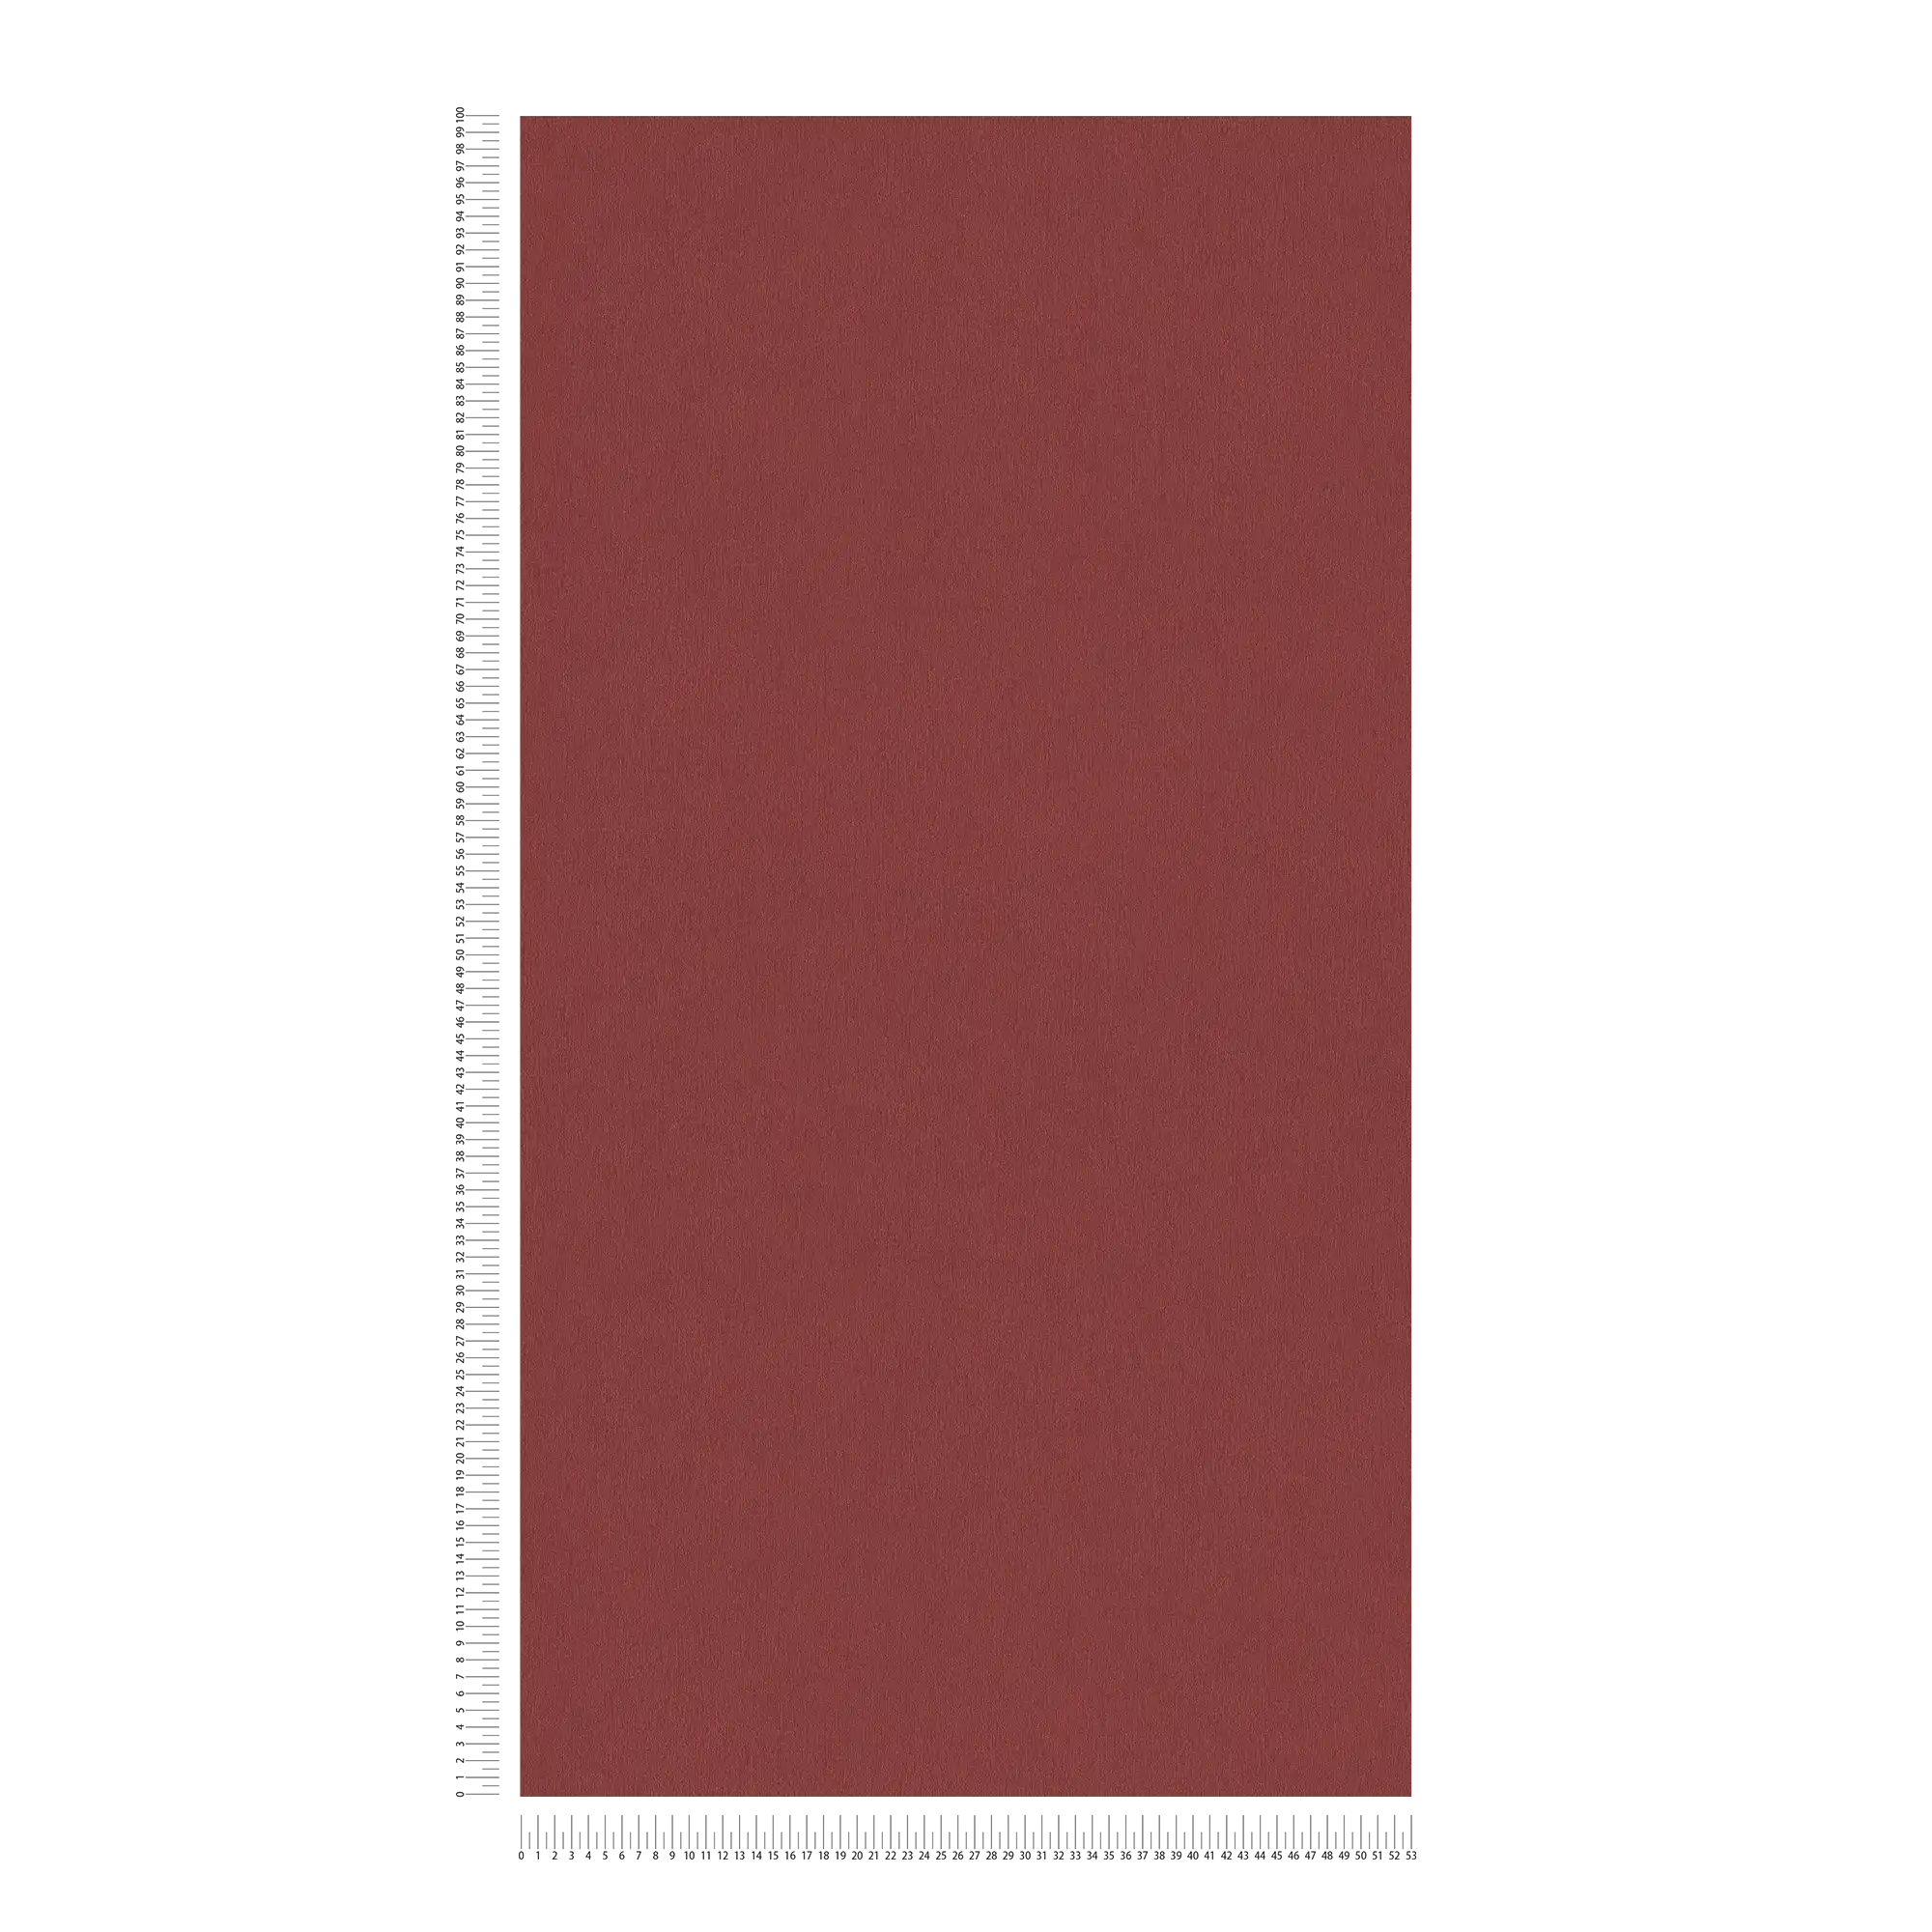             Carta da parati rosso bordeaux con struttura cromatica - rosso scuro
        